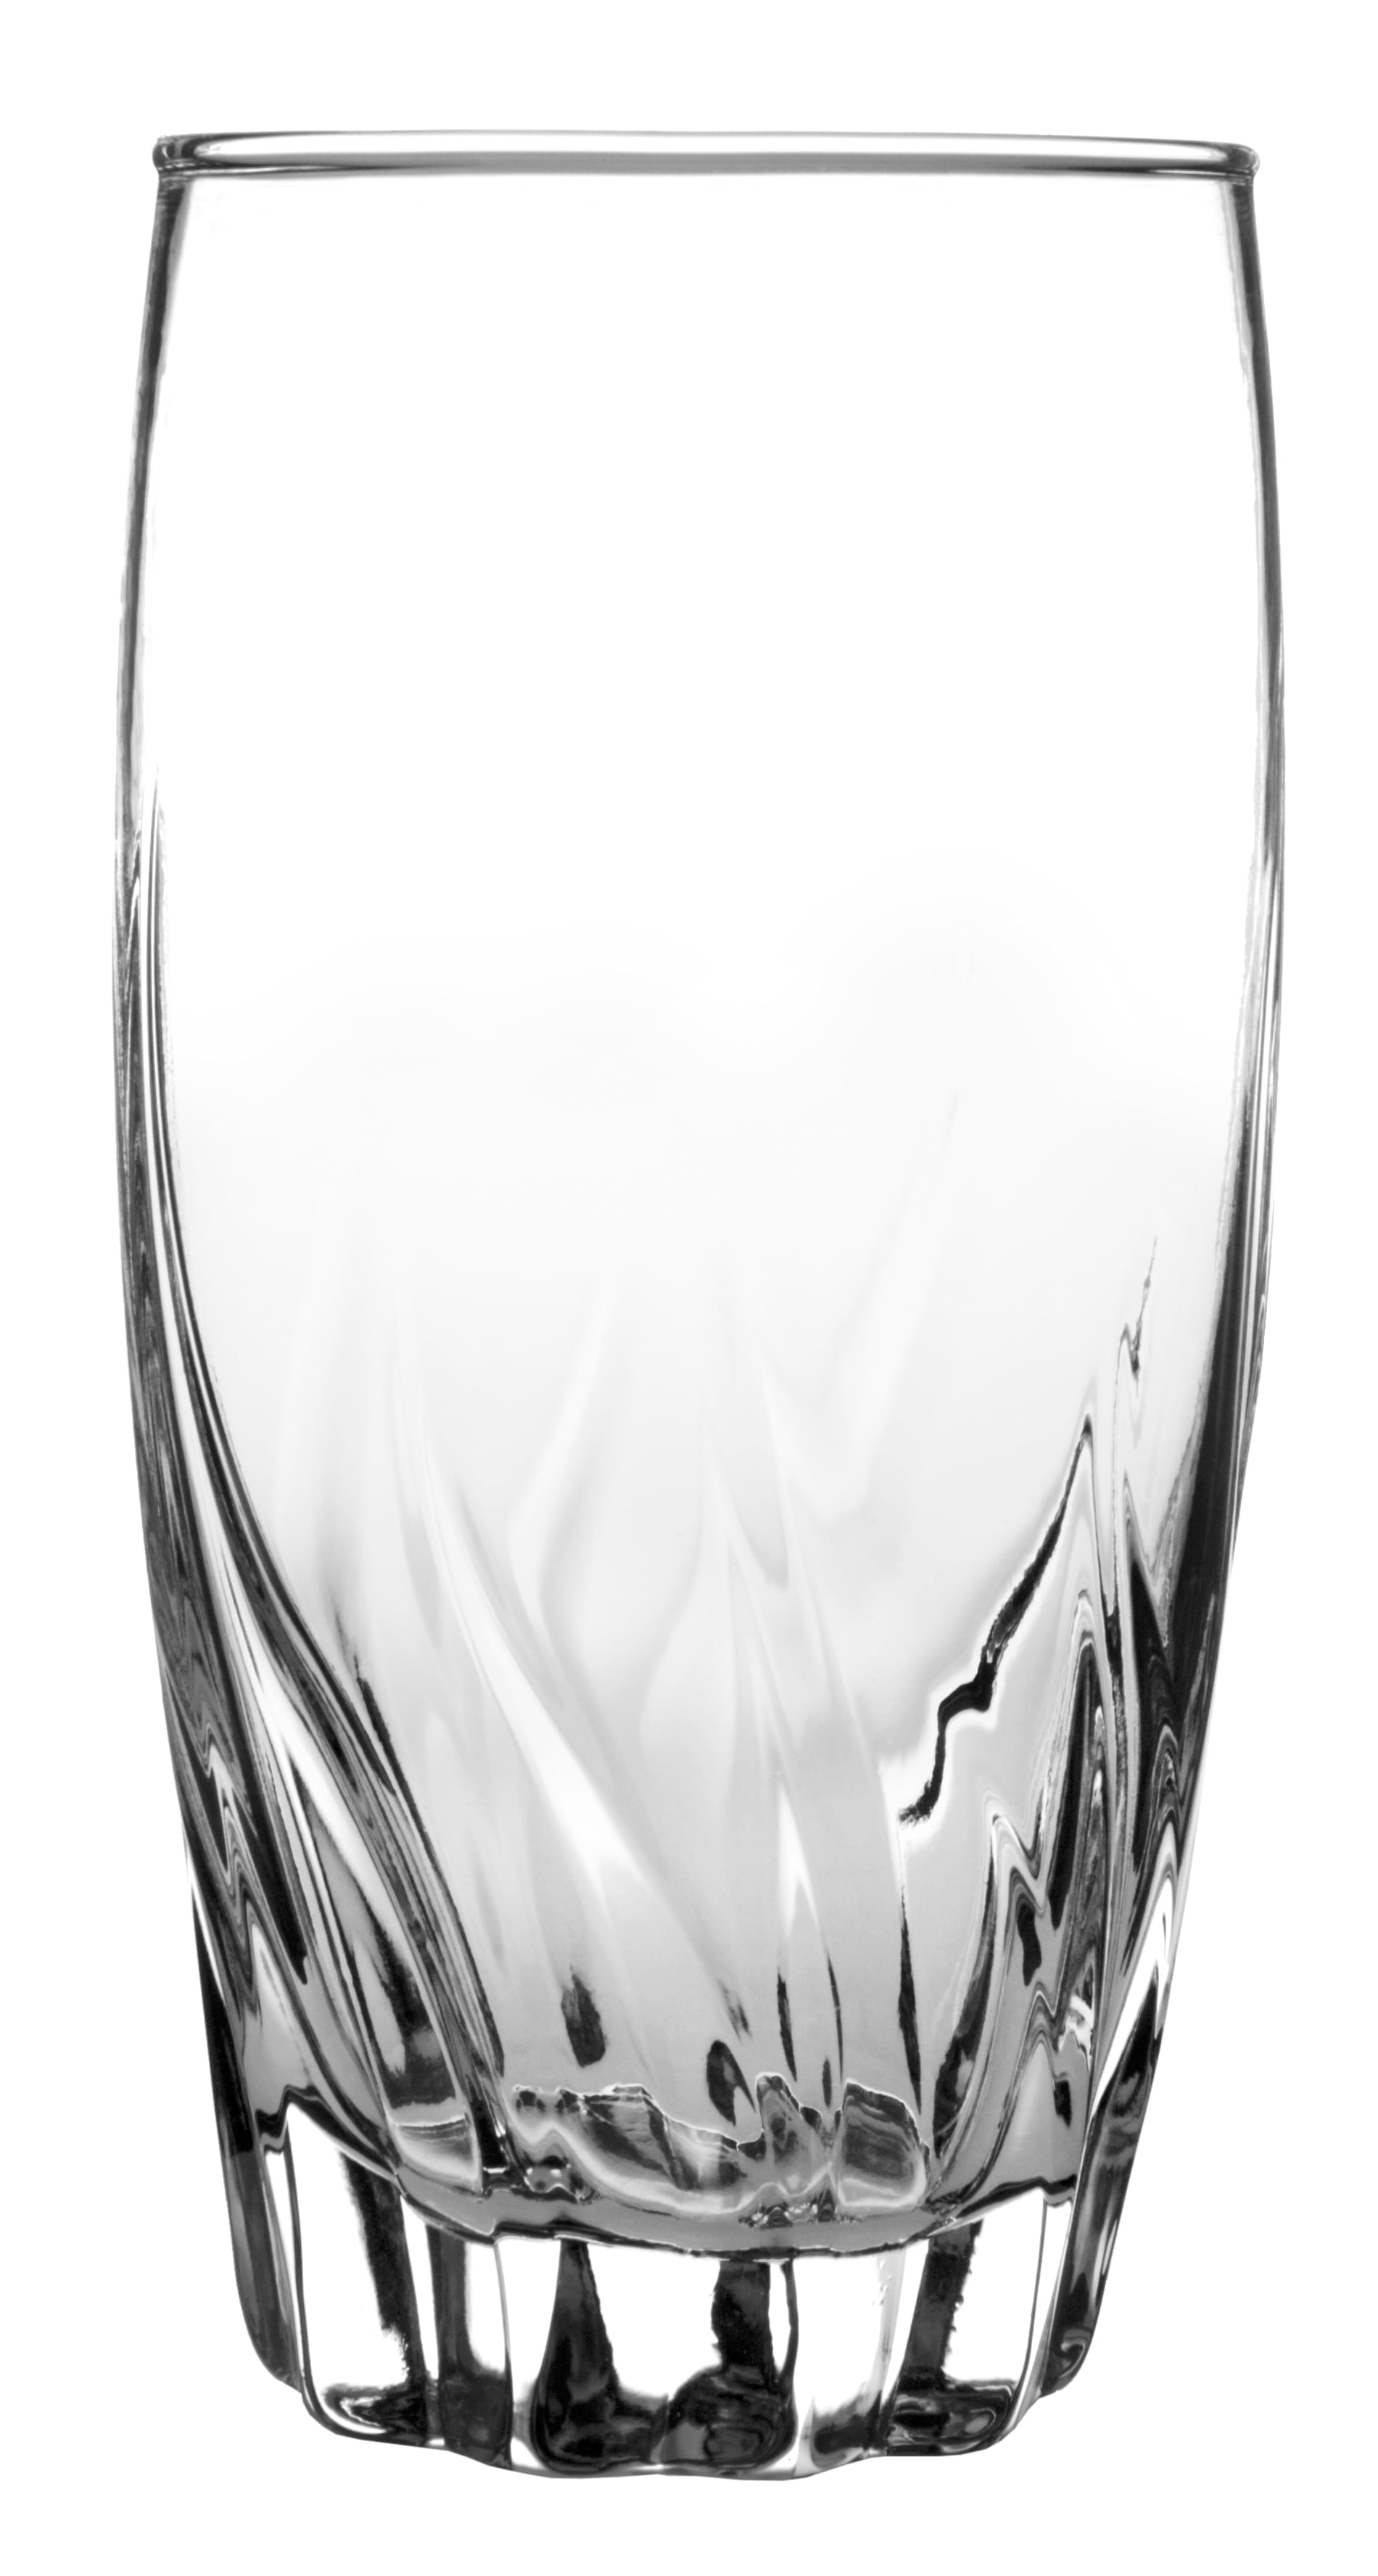 Eternal Night 4 - Piece 16oz. Glass Drinking Glass Glassware Set